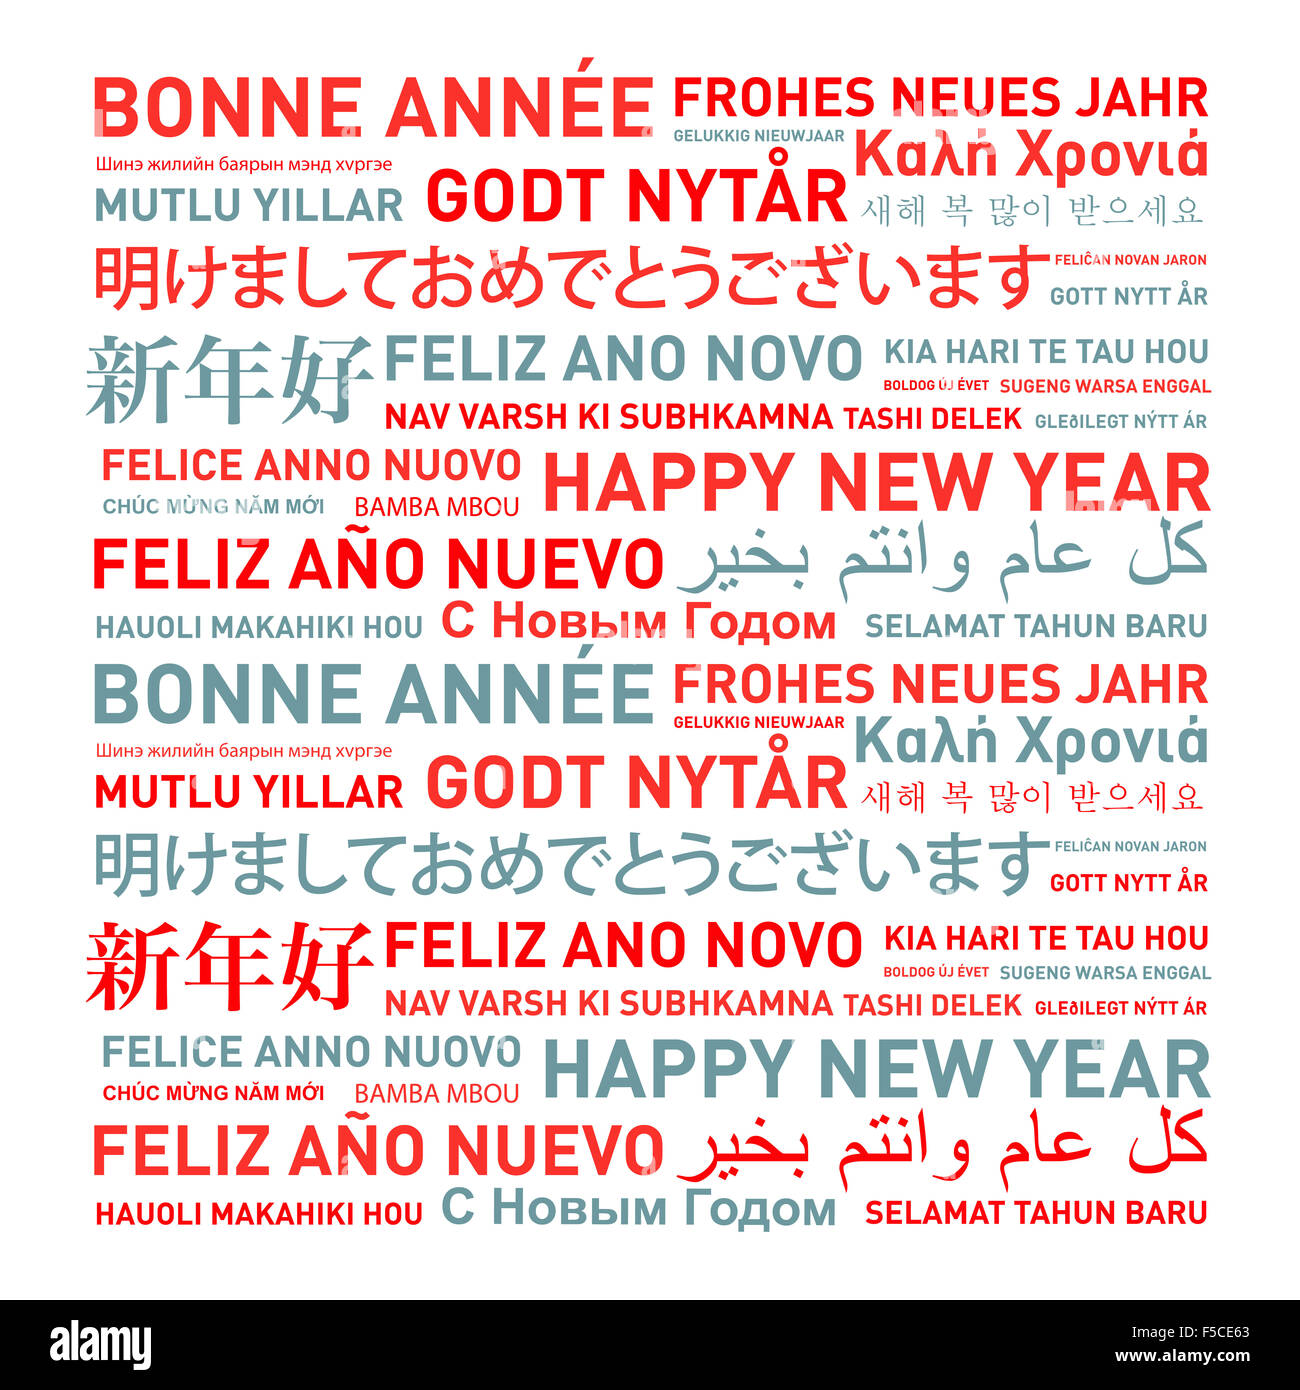 Bonne année carte du monde dans différentes langues Banque D'Images